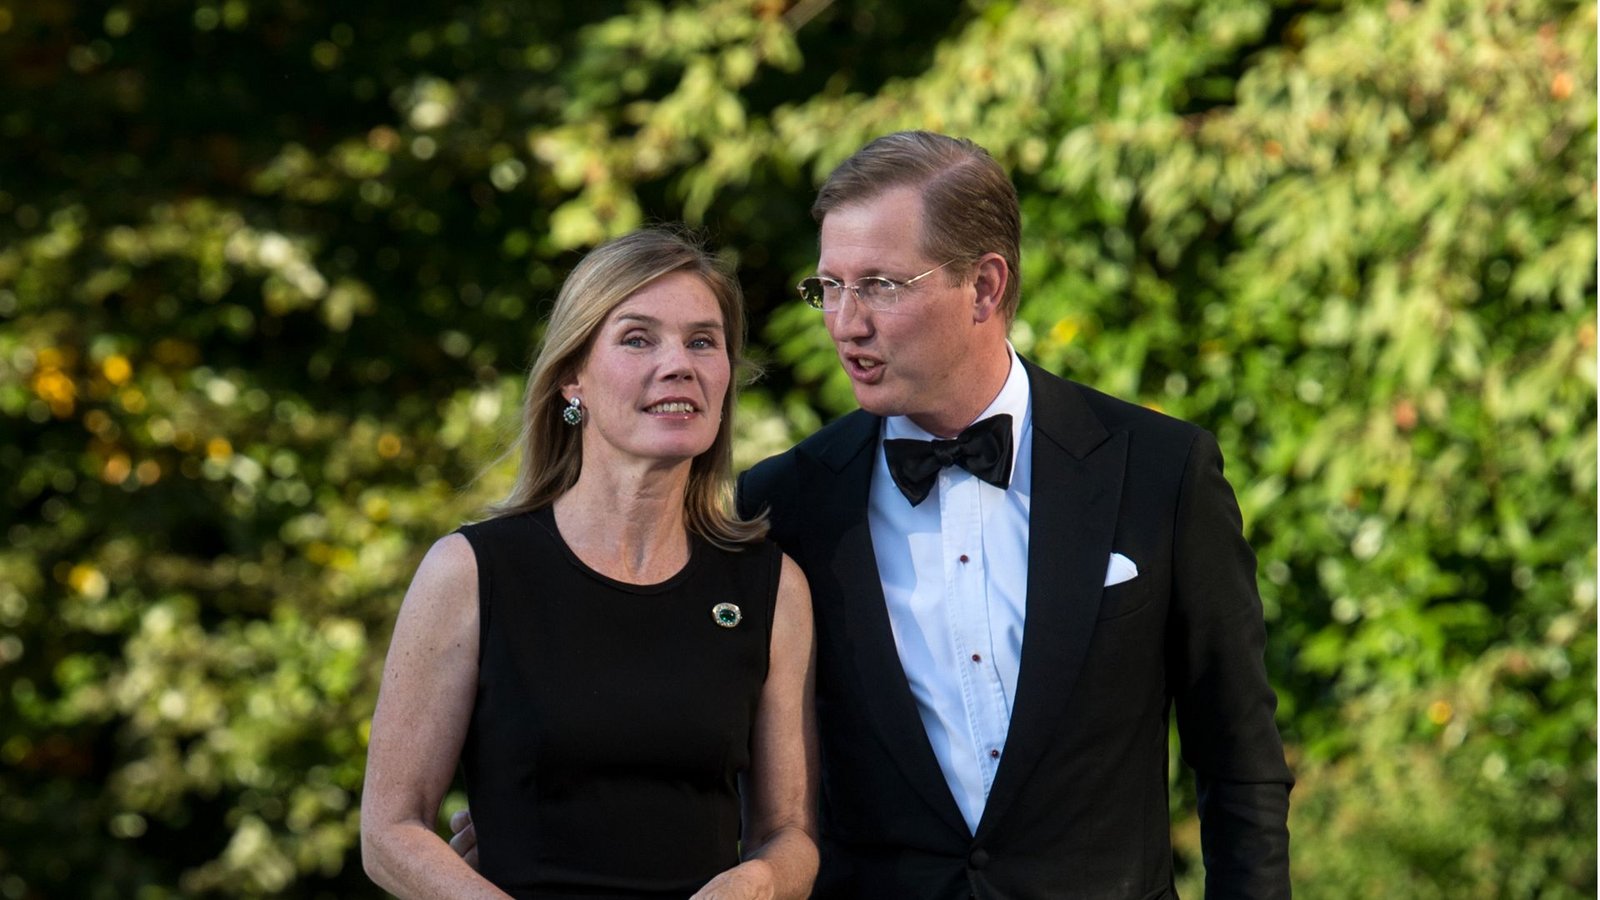 Prinz Bernhard ist seit dem Tod seines Vaters Chef des Hauses Baden. Er ist mit der Bürgerlichen Stephanie Kaul verheiratet.Foto: dpa